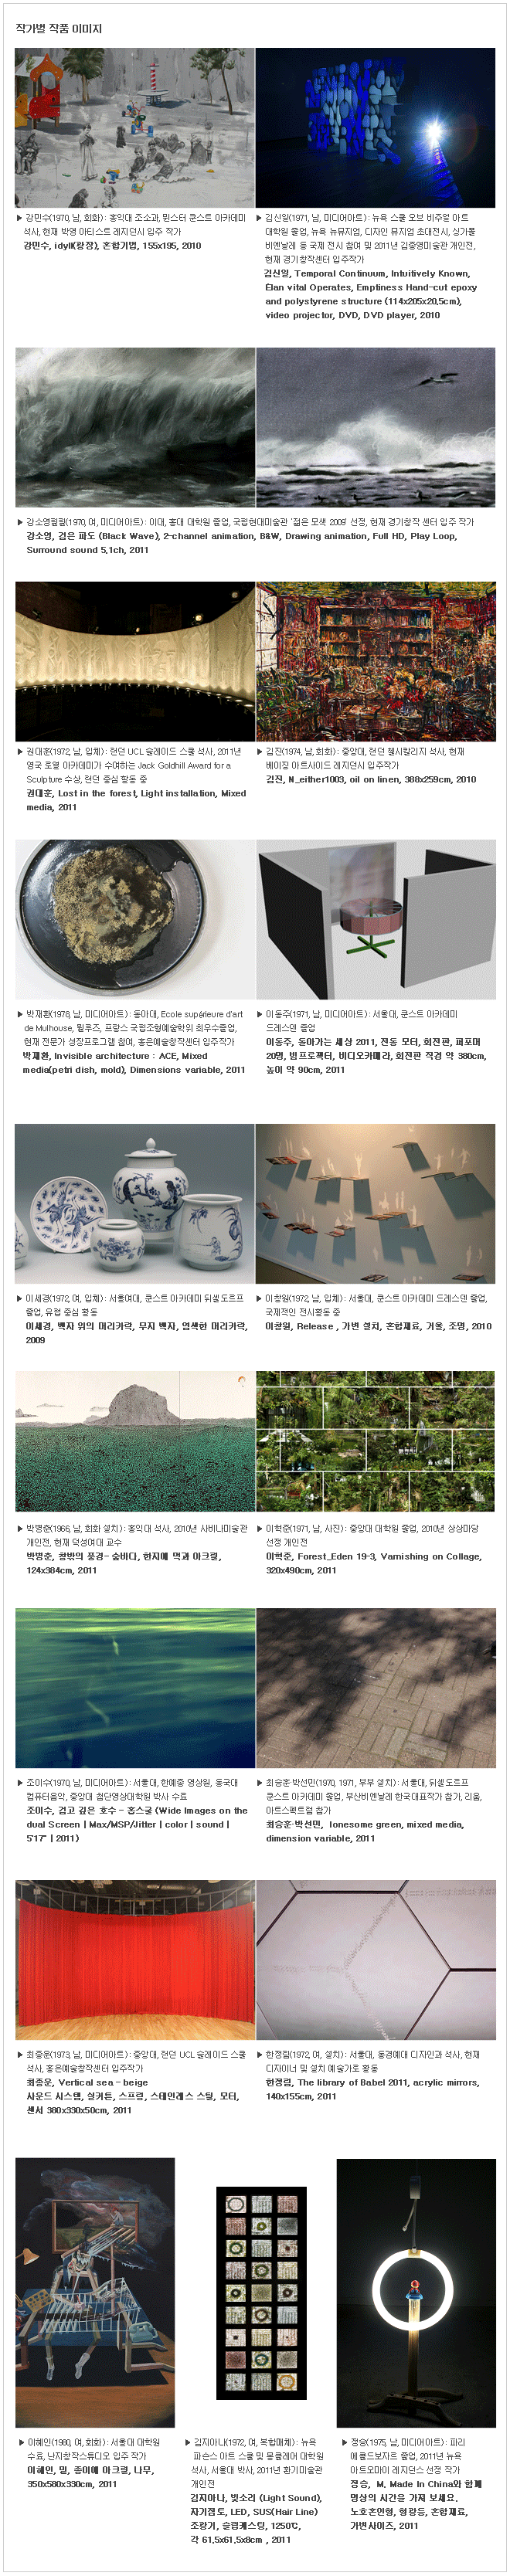 권대훈, Lost in the forest, Light installation, Mixed media, 2011